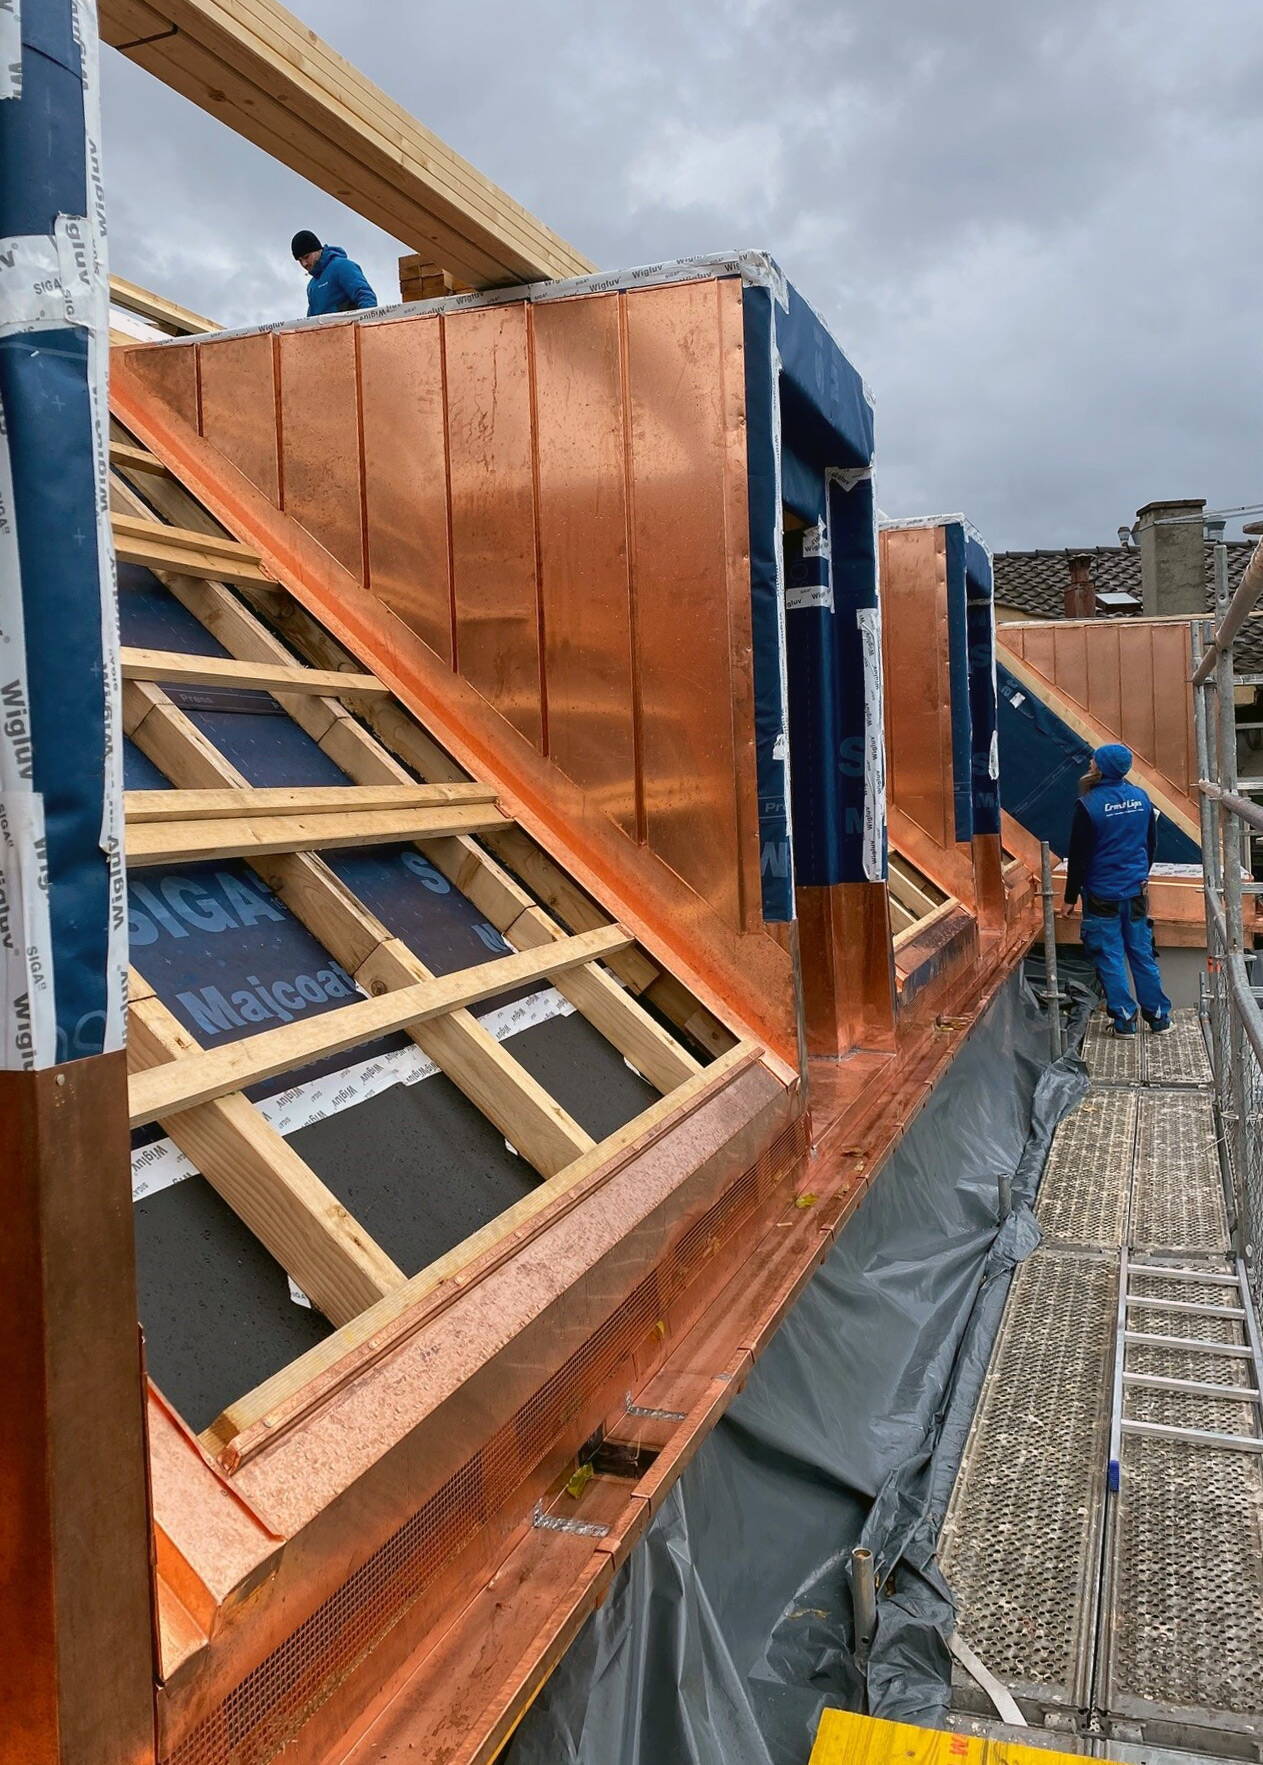 Baustellensituation Spenglerarbeiten auf einem Dach.